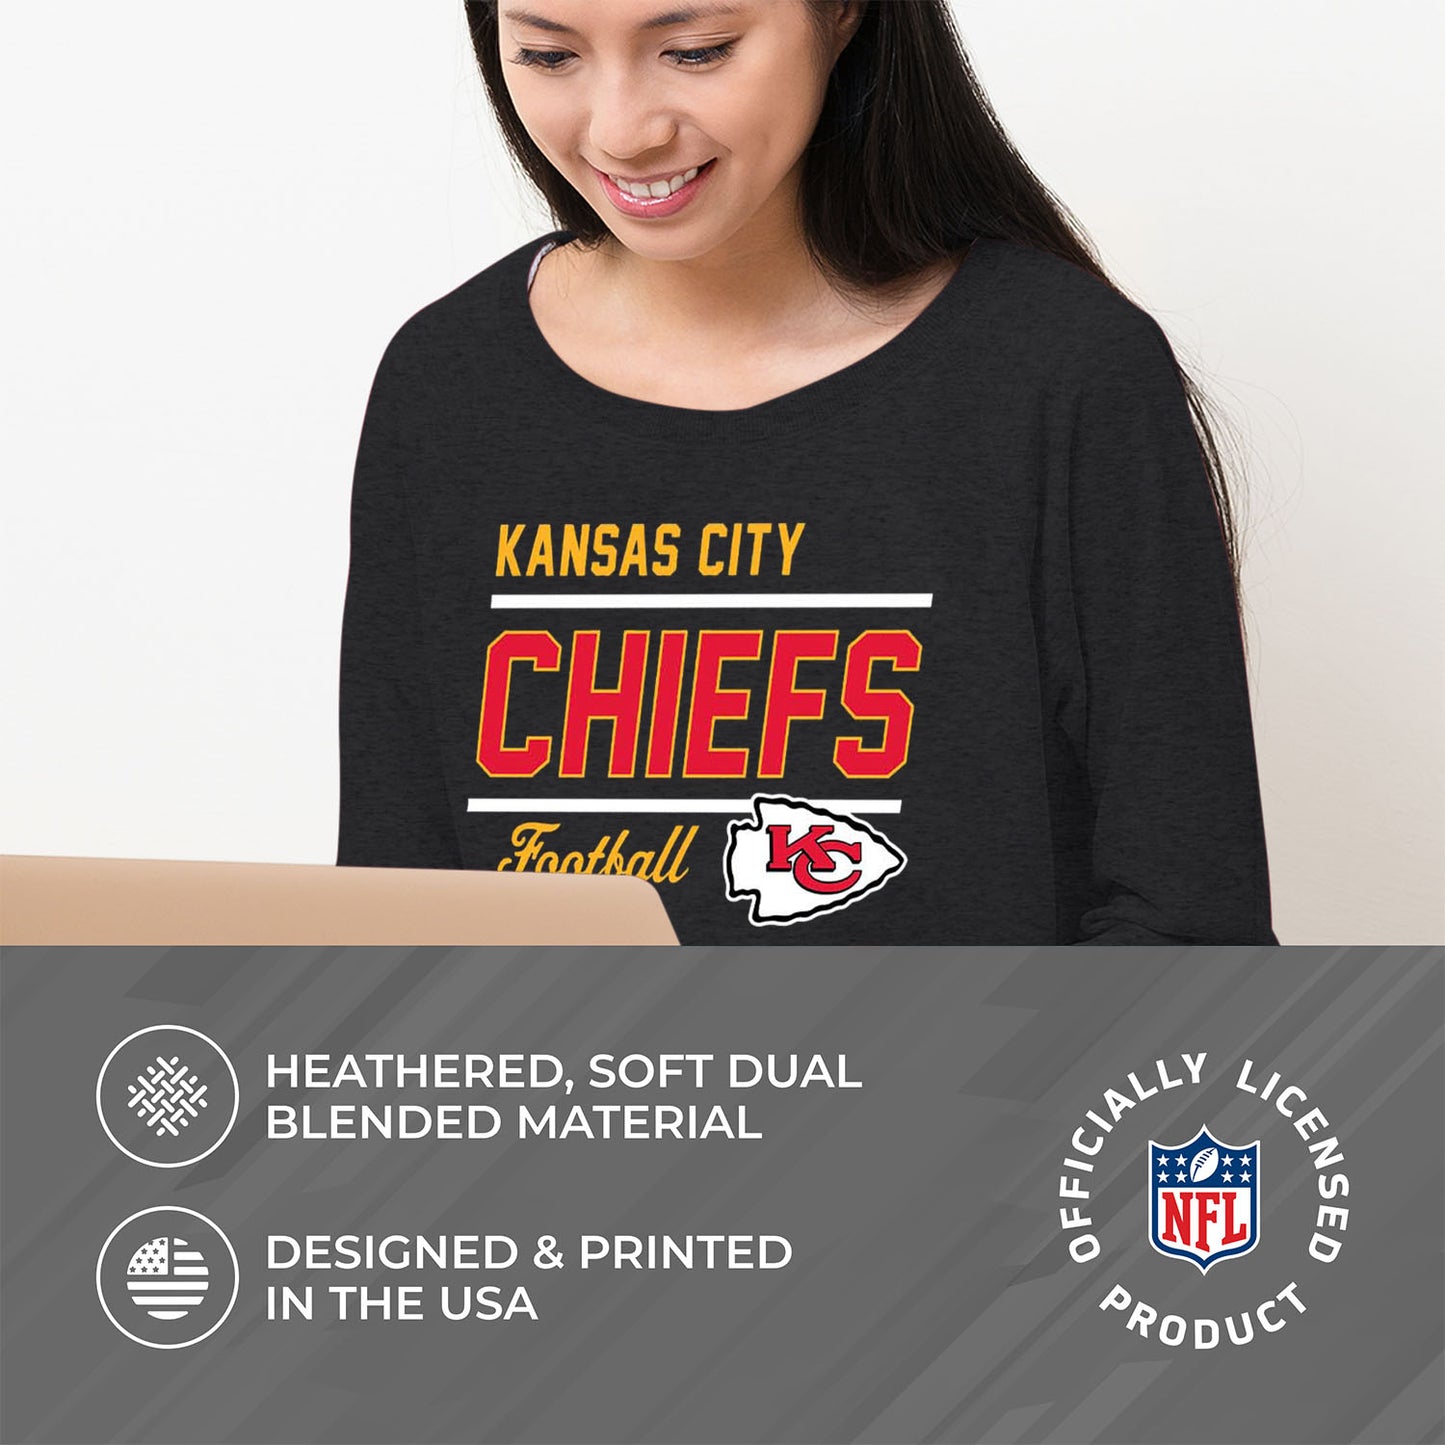 Kansas City Chiefs NFL Womens Crew Neck Light Weight - Charcoal